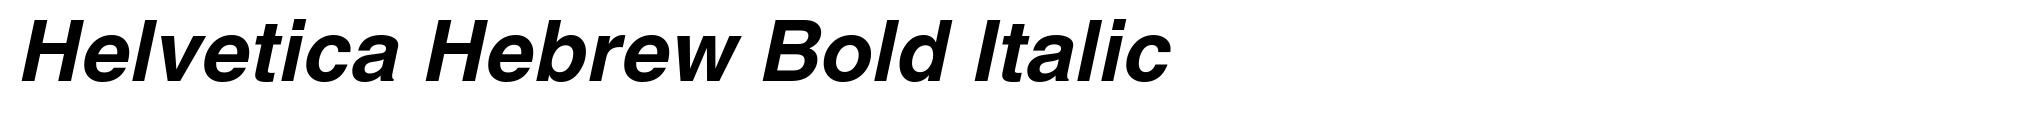 Helvetica Hebrew Bold Italic image